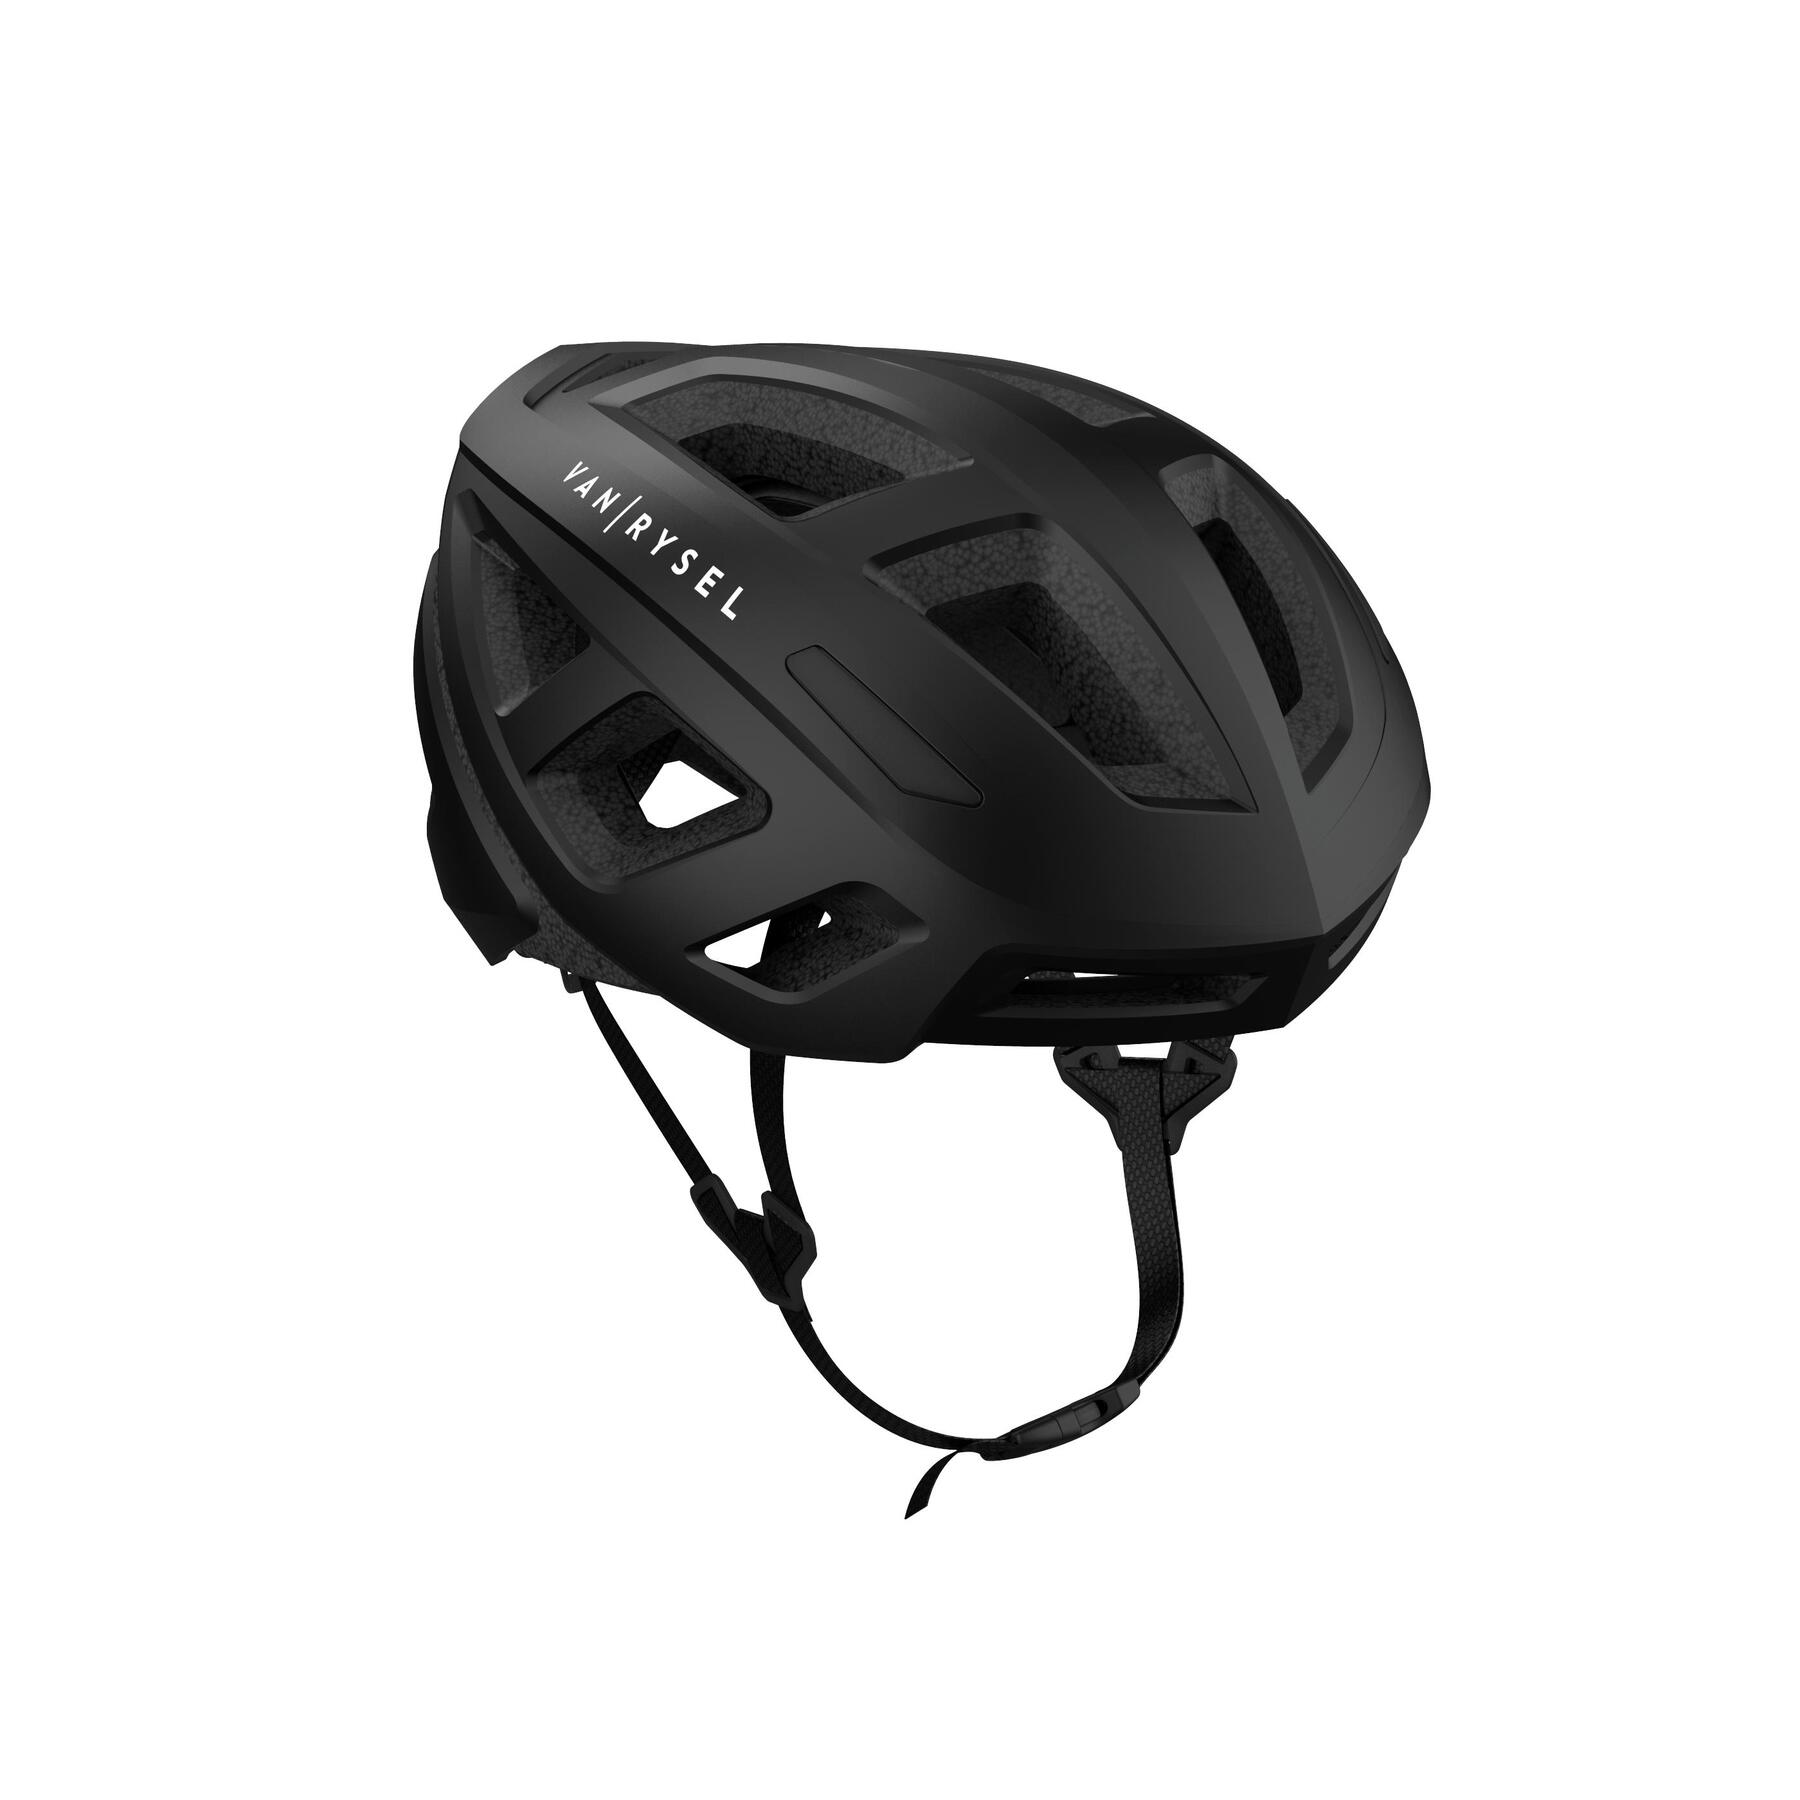 Road Cycling Bike Helmet Van Rysel RCR 500 - Black